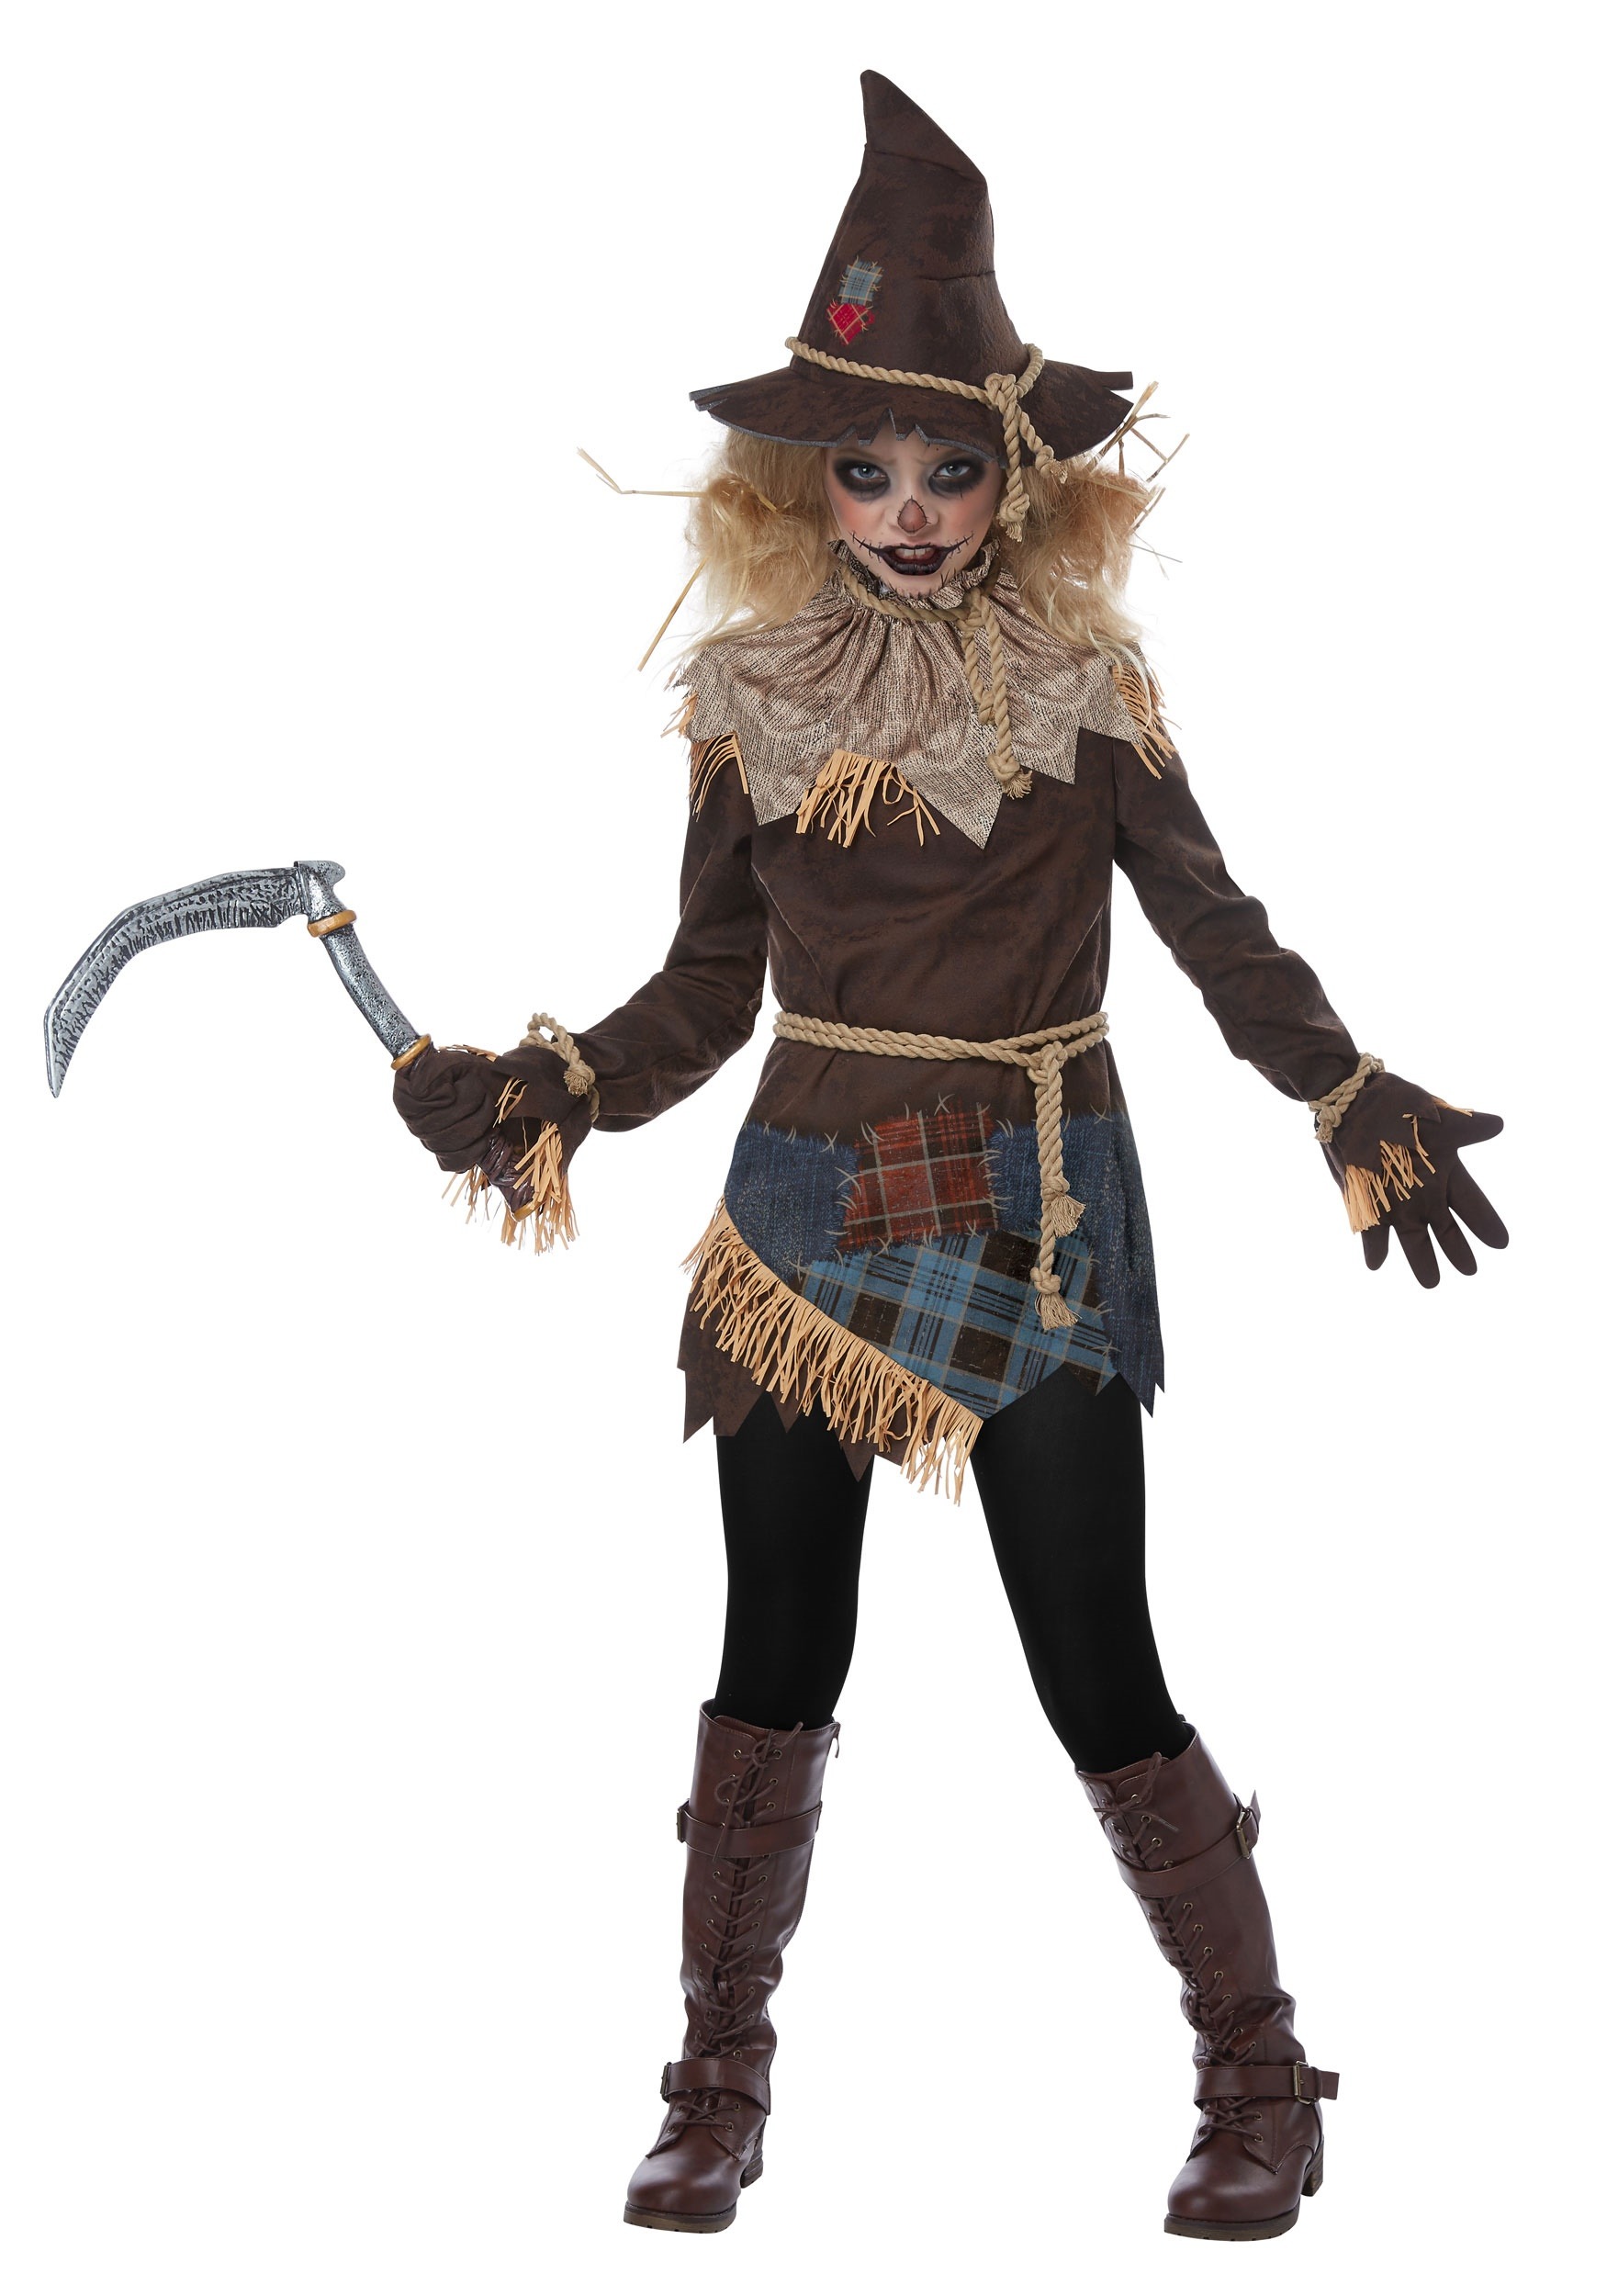 Girls Creepy Scarecrow Costume